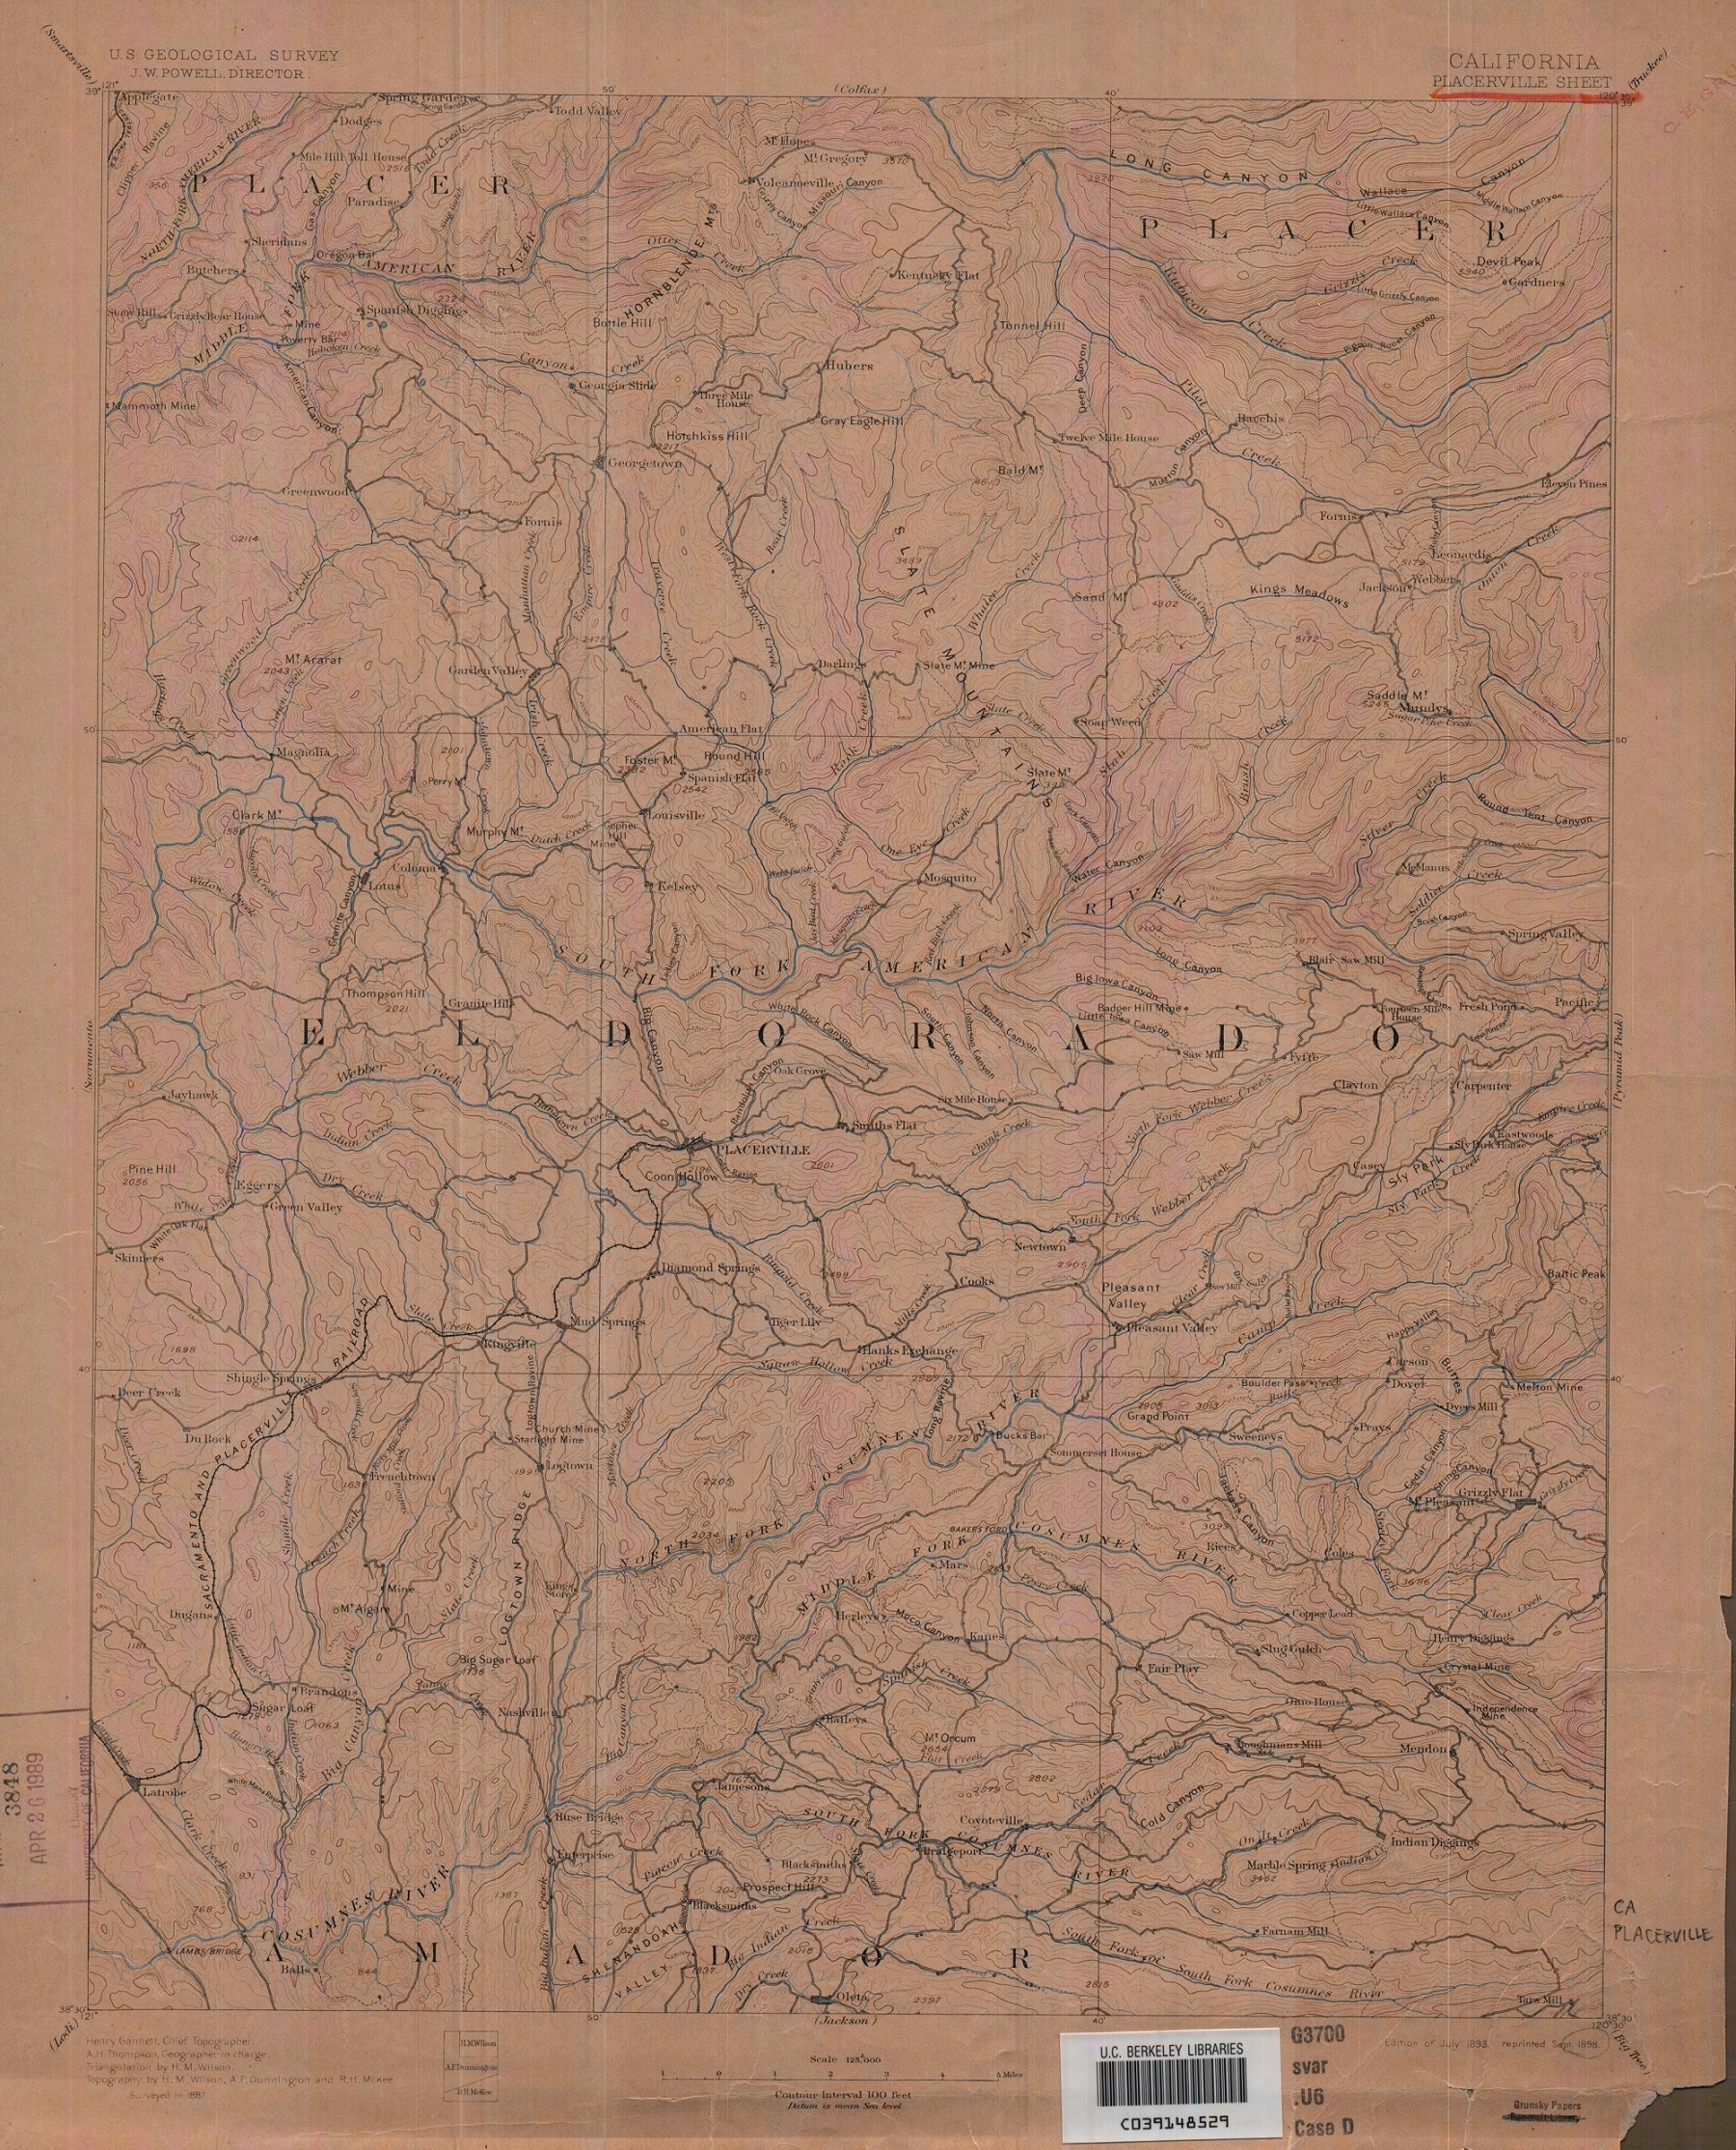 placerville-map-1893-1898-b